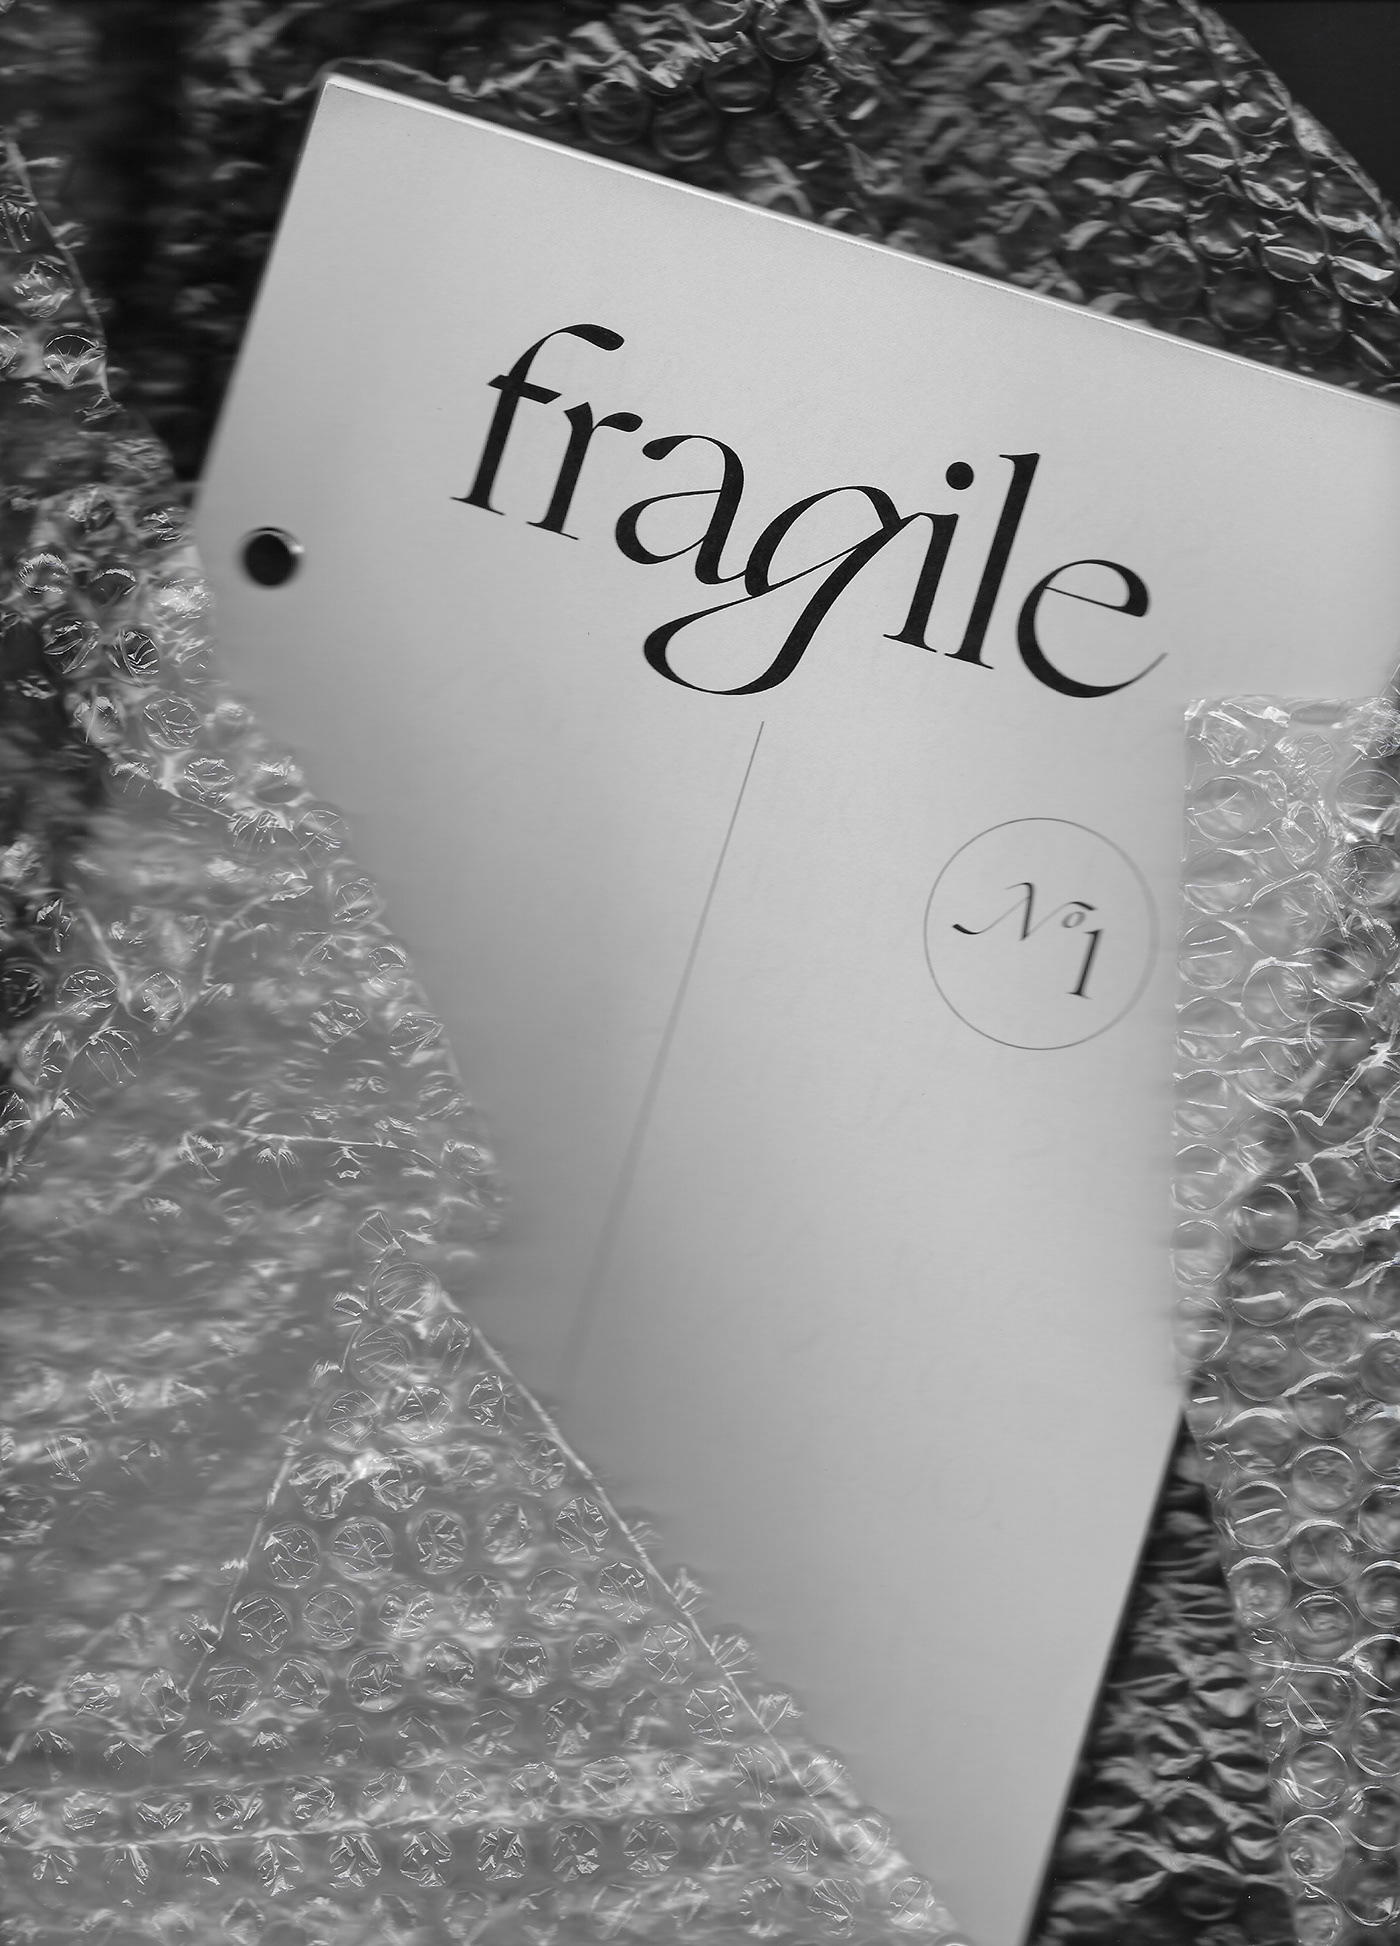 Fragile magazine mental health ogg Cinema editorial design  metal binding Montreal SHARPTYPE UQAM